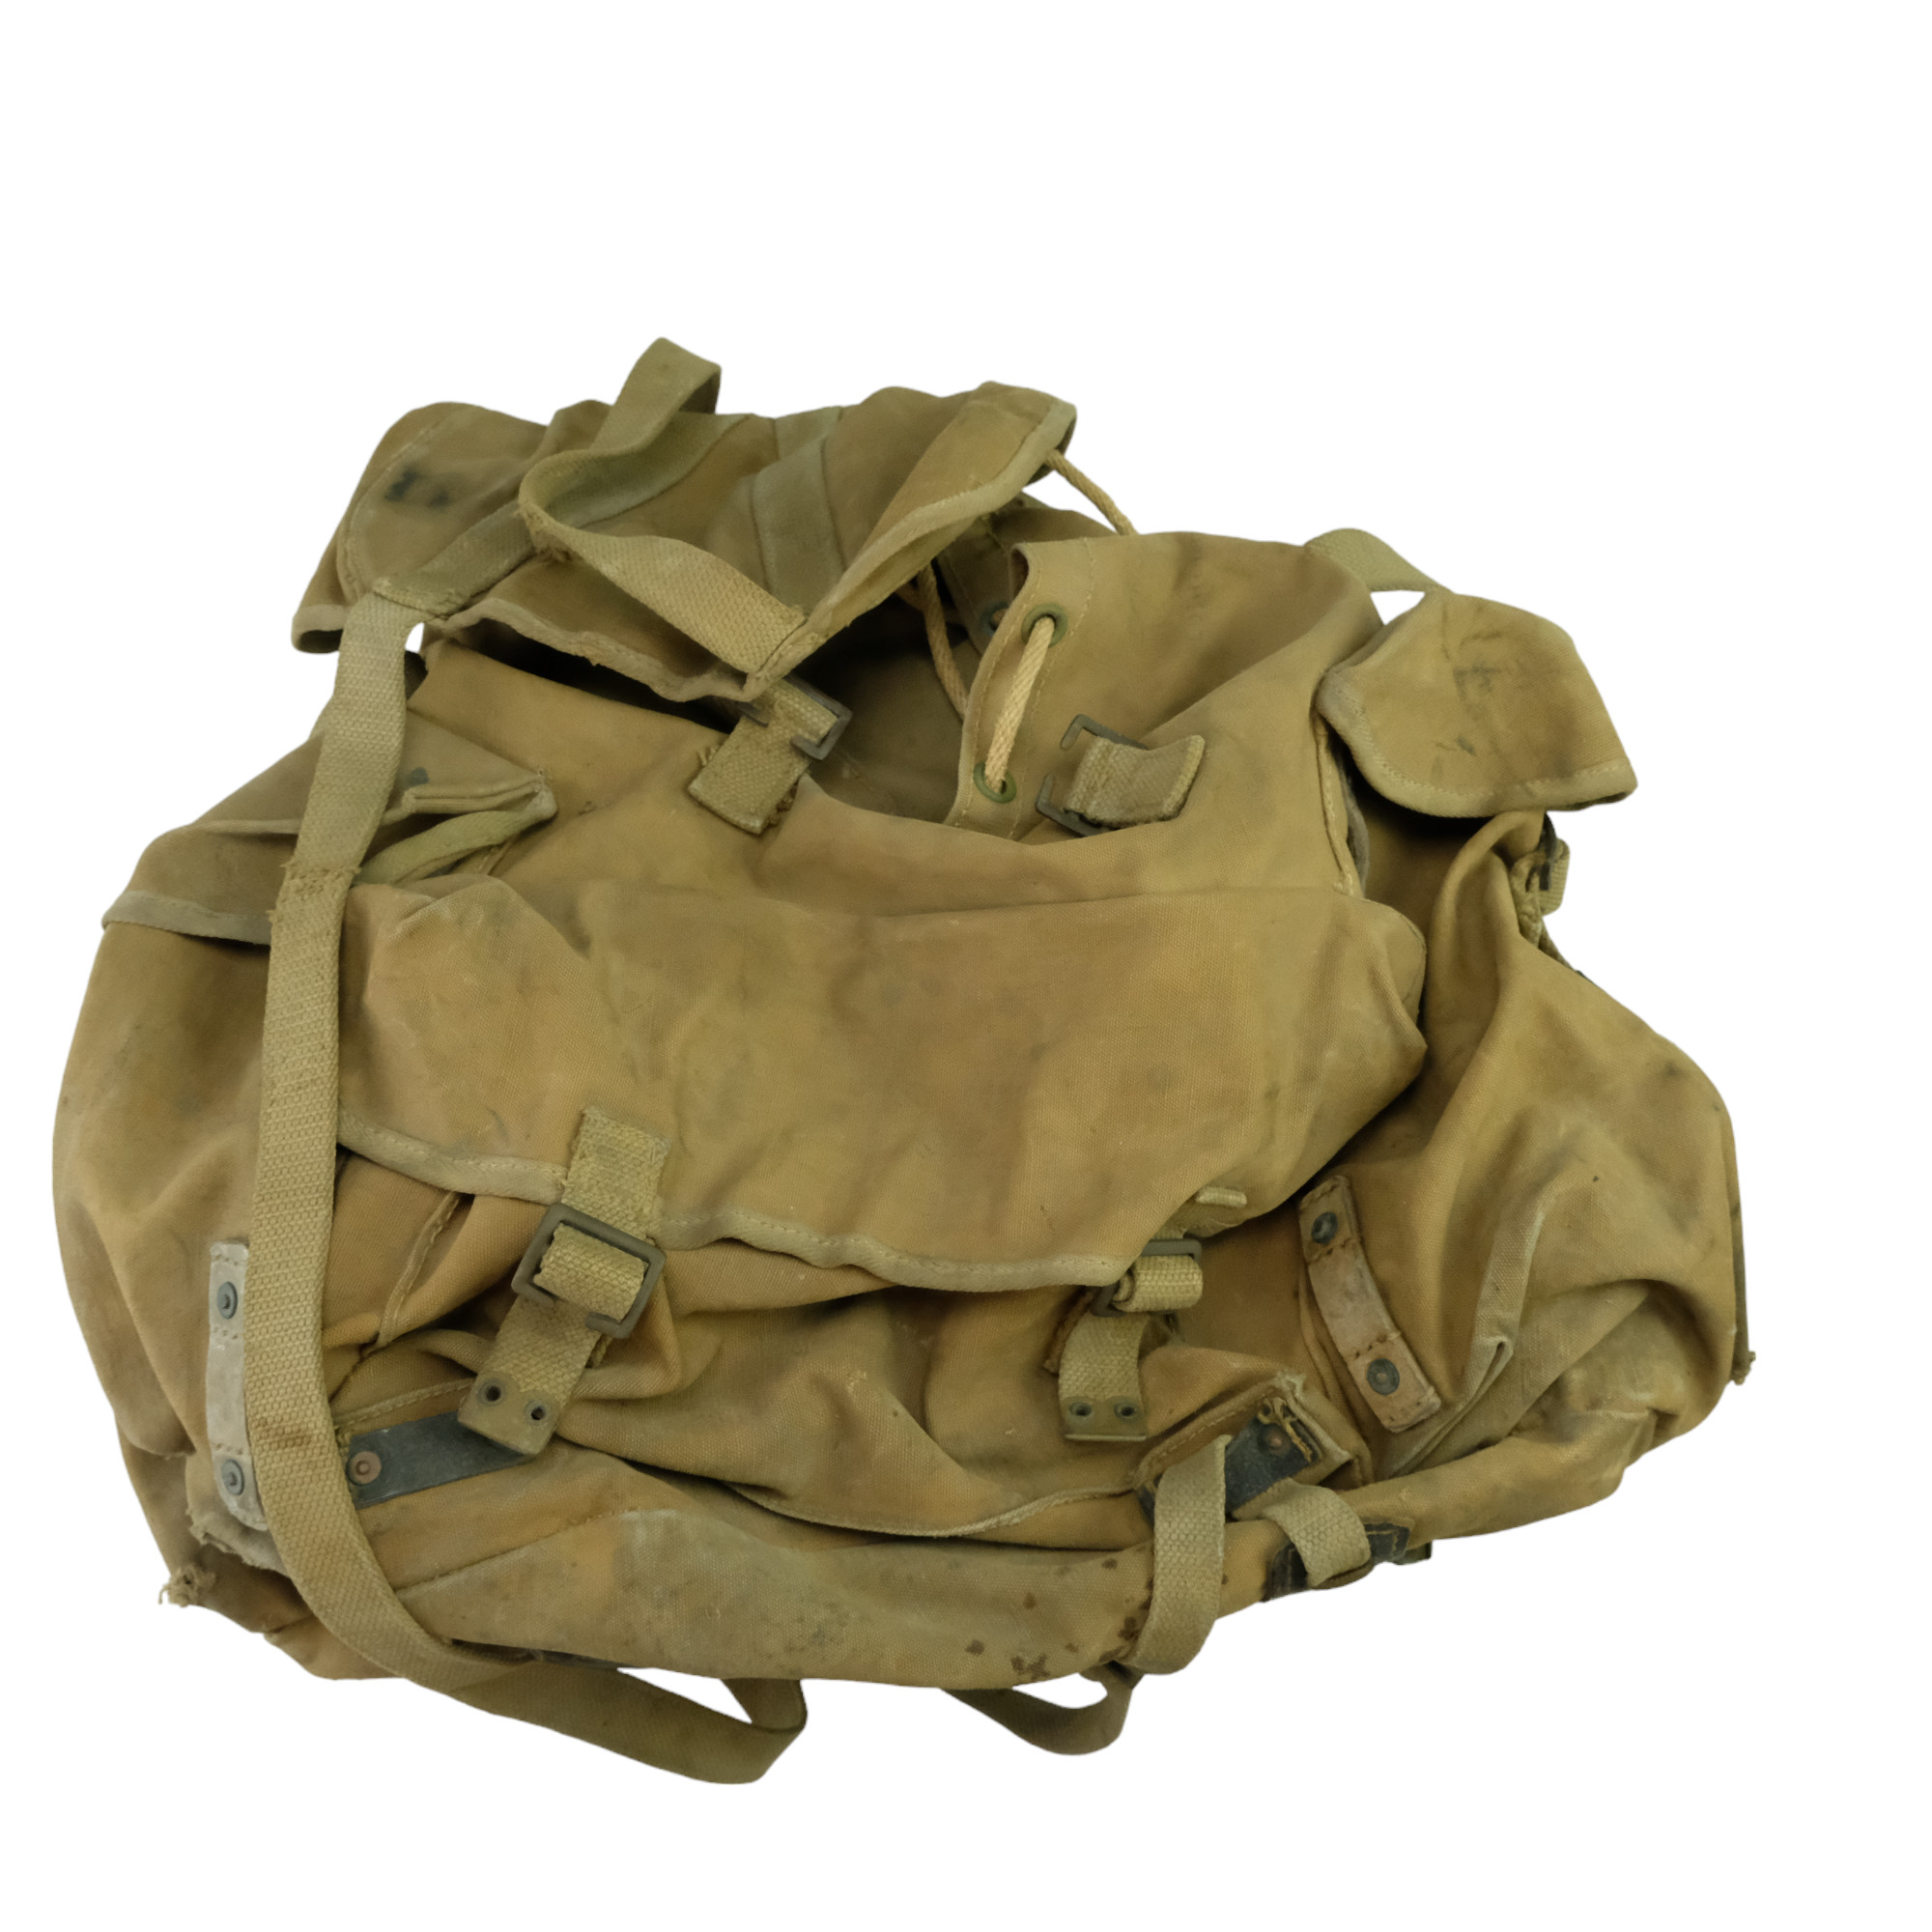 A Second World War British army Bergen rucksack